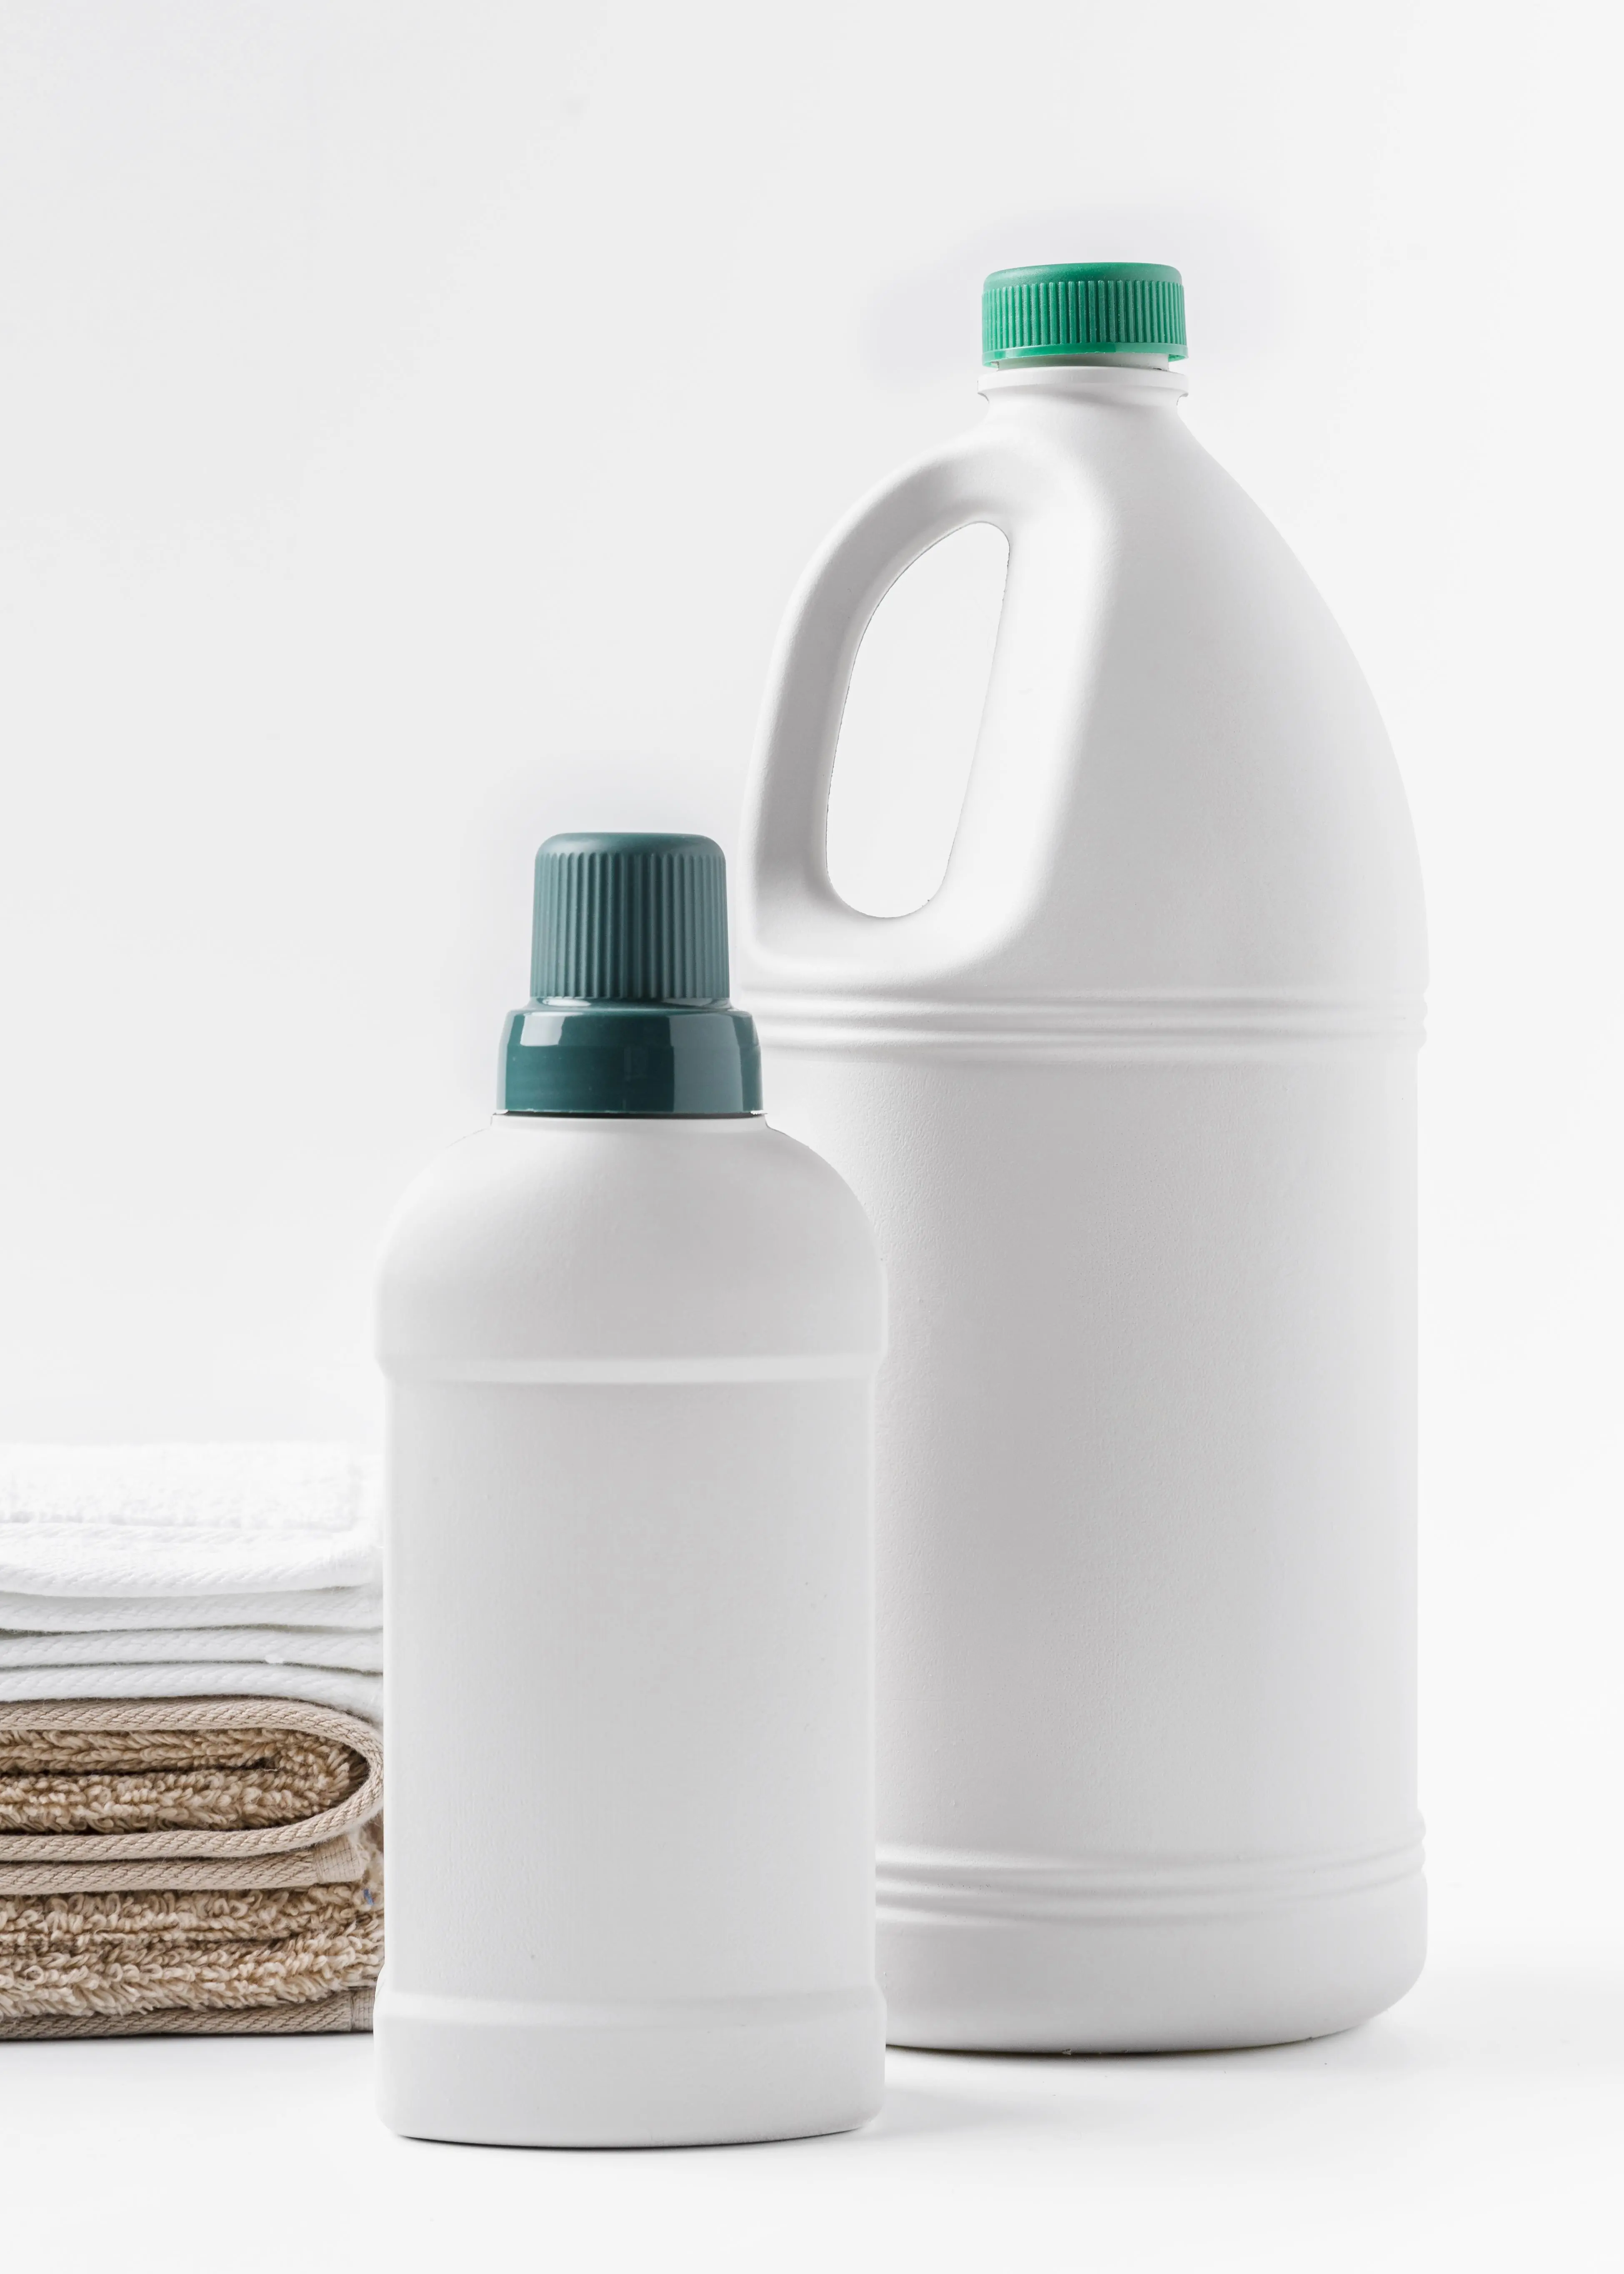 Imagen mostrando plastico como botellas, botes y tapas de los mimsos demostrando la aplicacion o uso del producto 